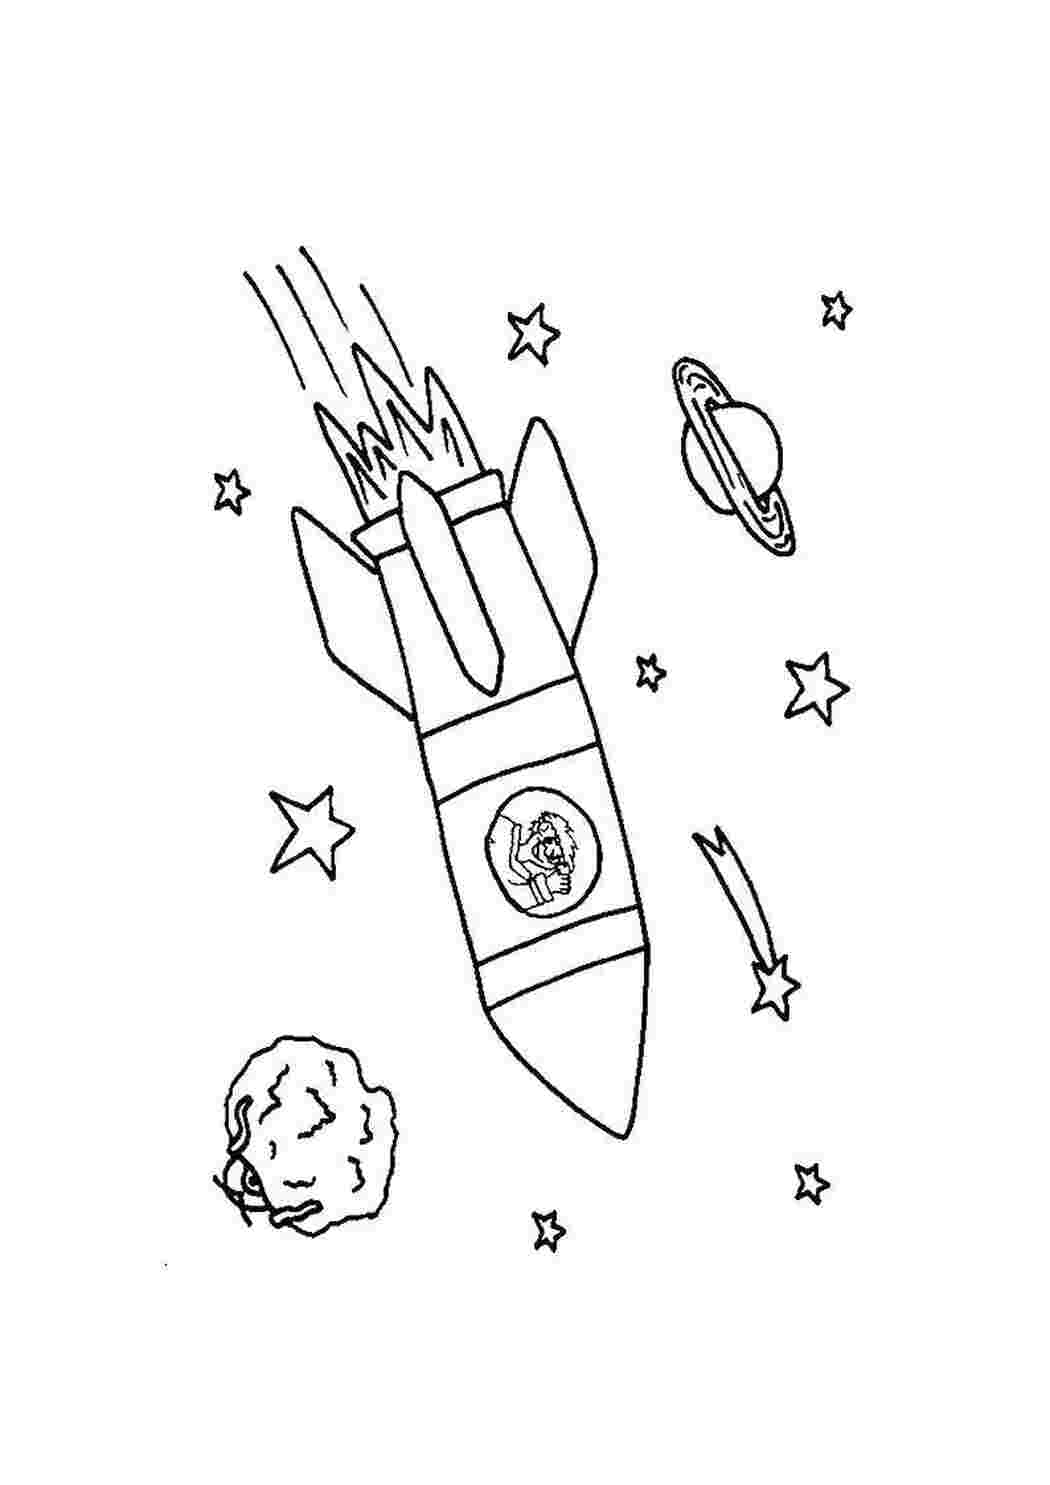 Ракета карандашом для детей. Космический корабль Восток - 1 разукрашка. Ракета Юрия Гагарина Восток-1 рисунок. Ракета раскраска. Космос раскраска для детей.